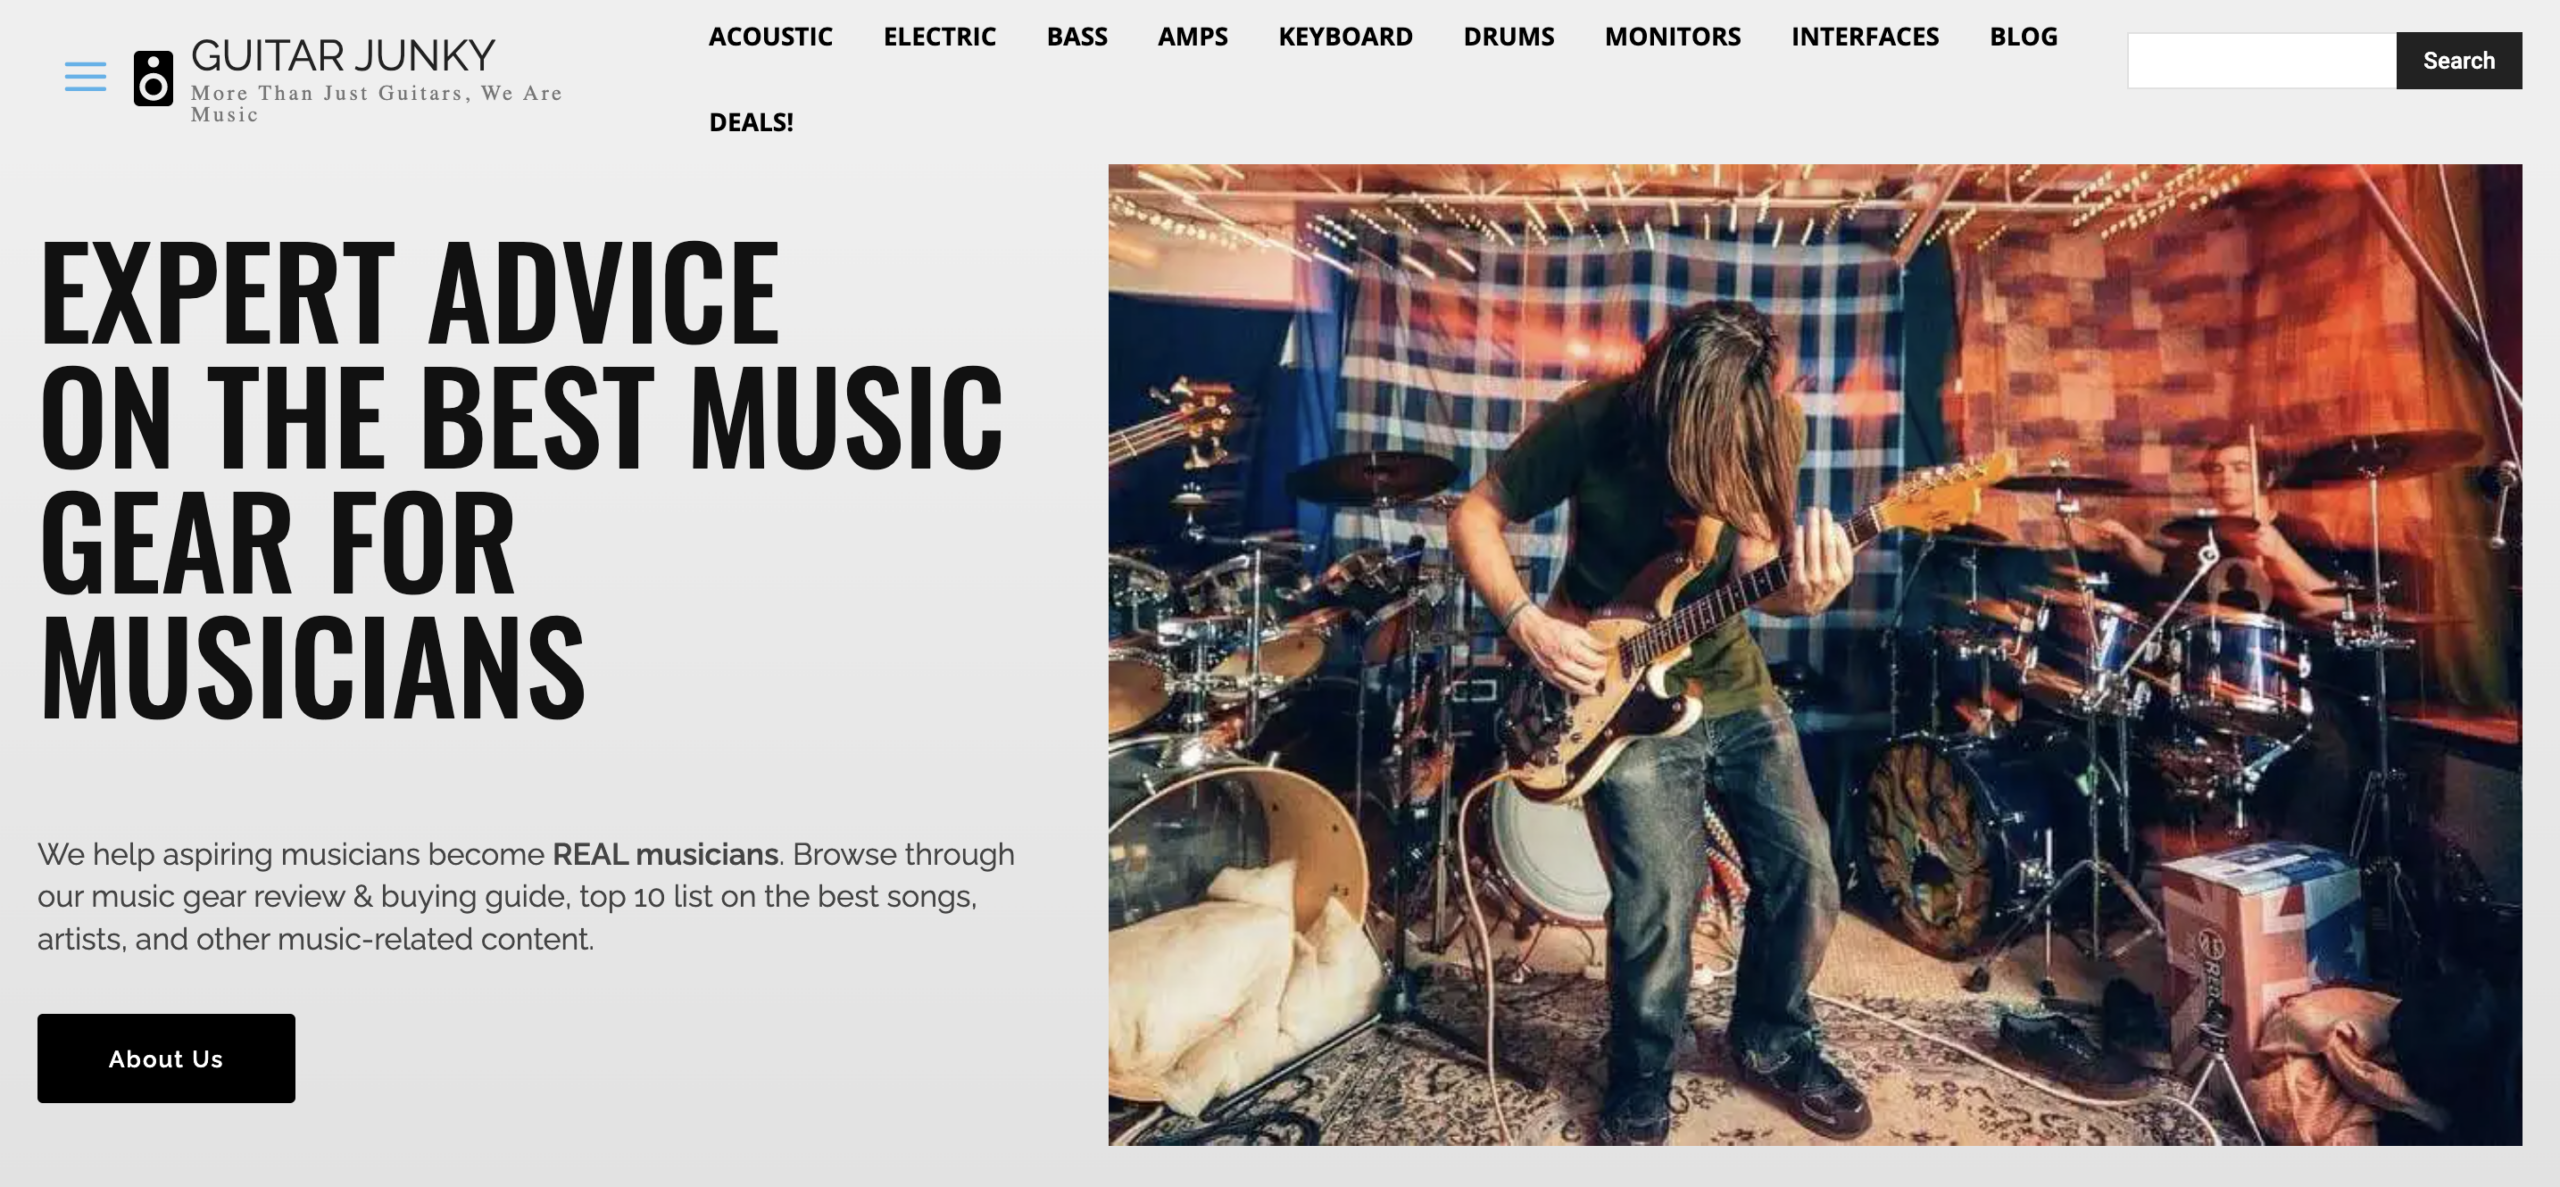 guitar junkie homepage affiliate marketing website example